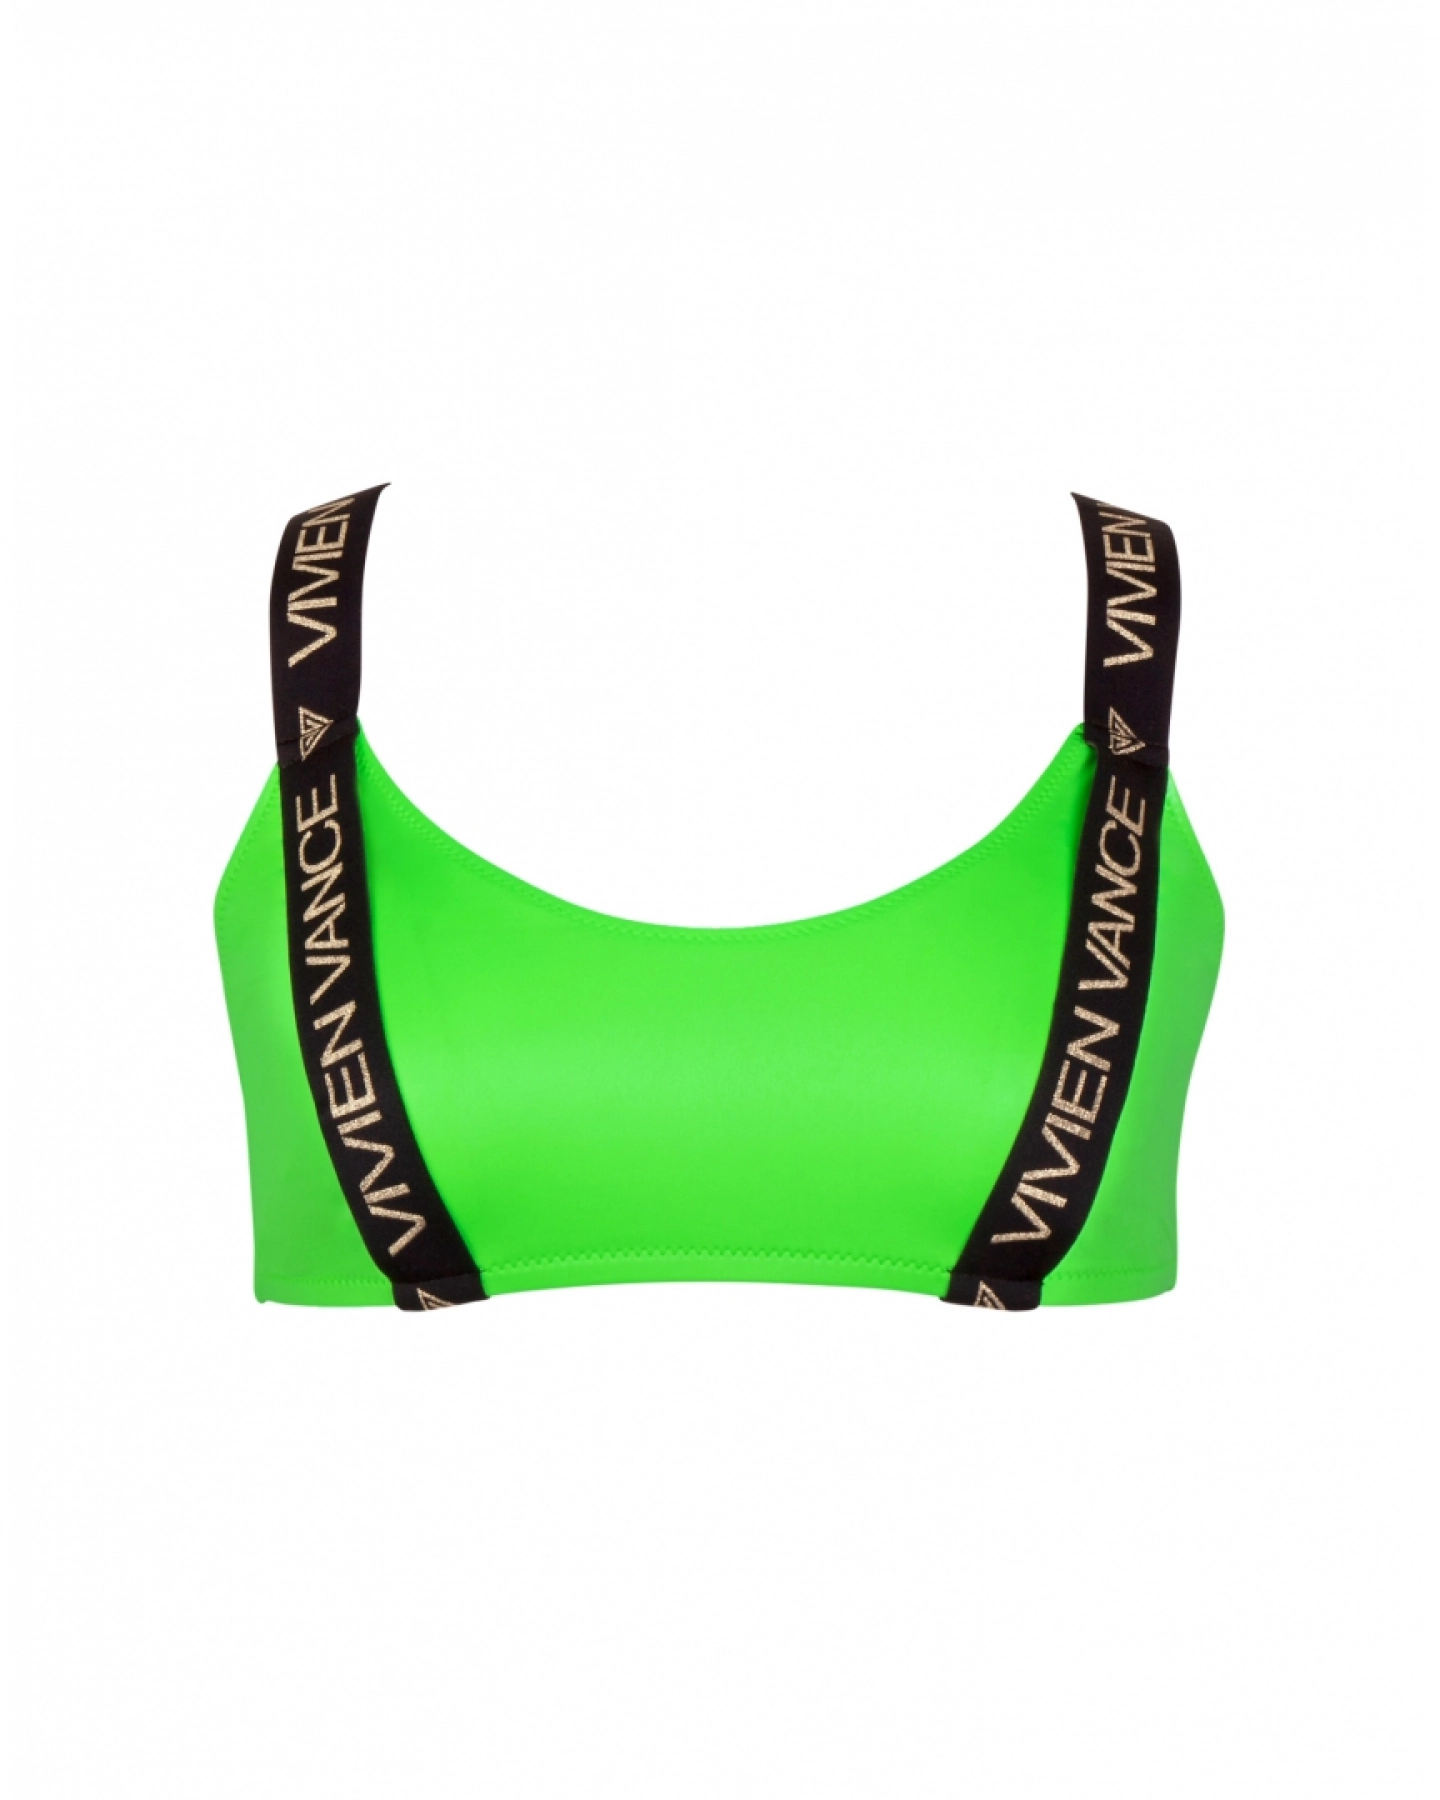 Victorias Secret neon green bra size medium